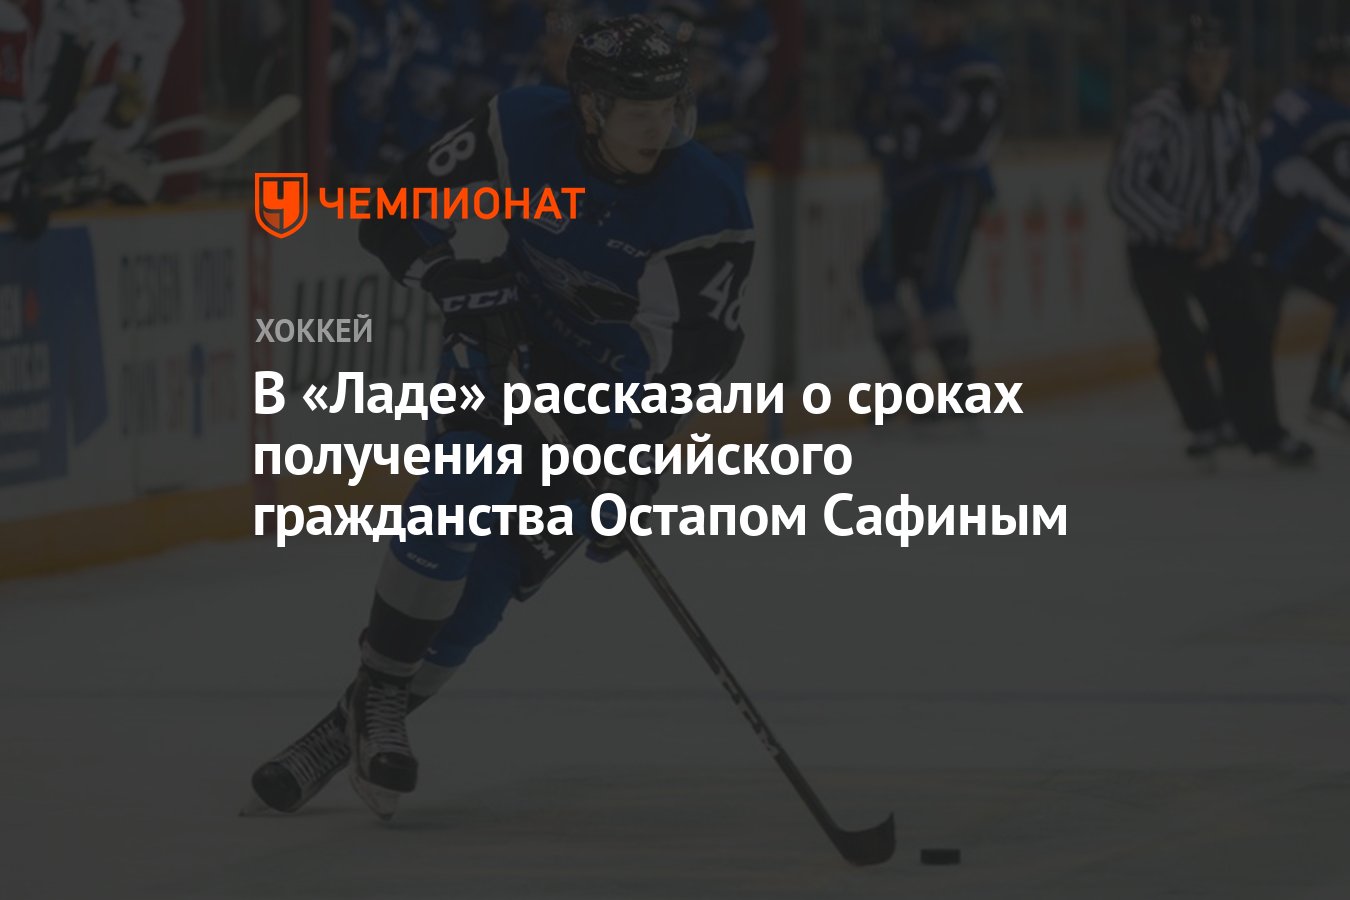 Успенская получила российское гражданство. Генеральный директор хоккея.